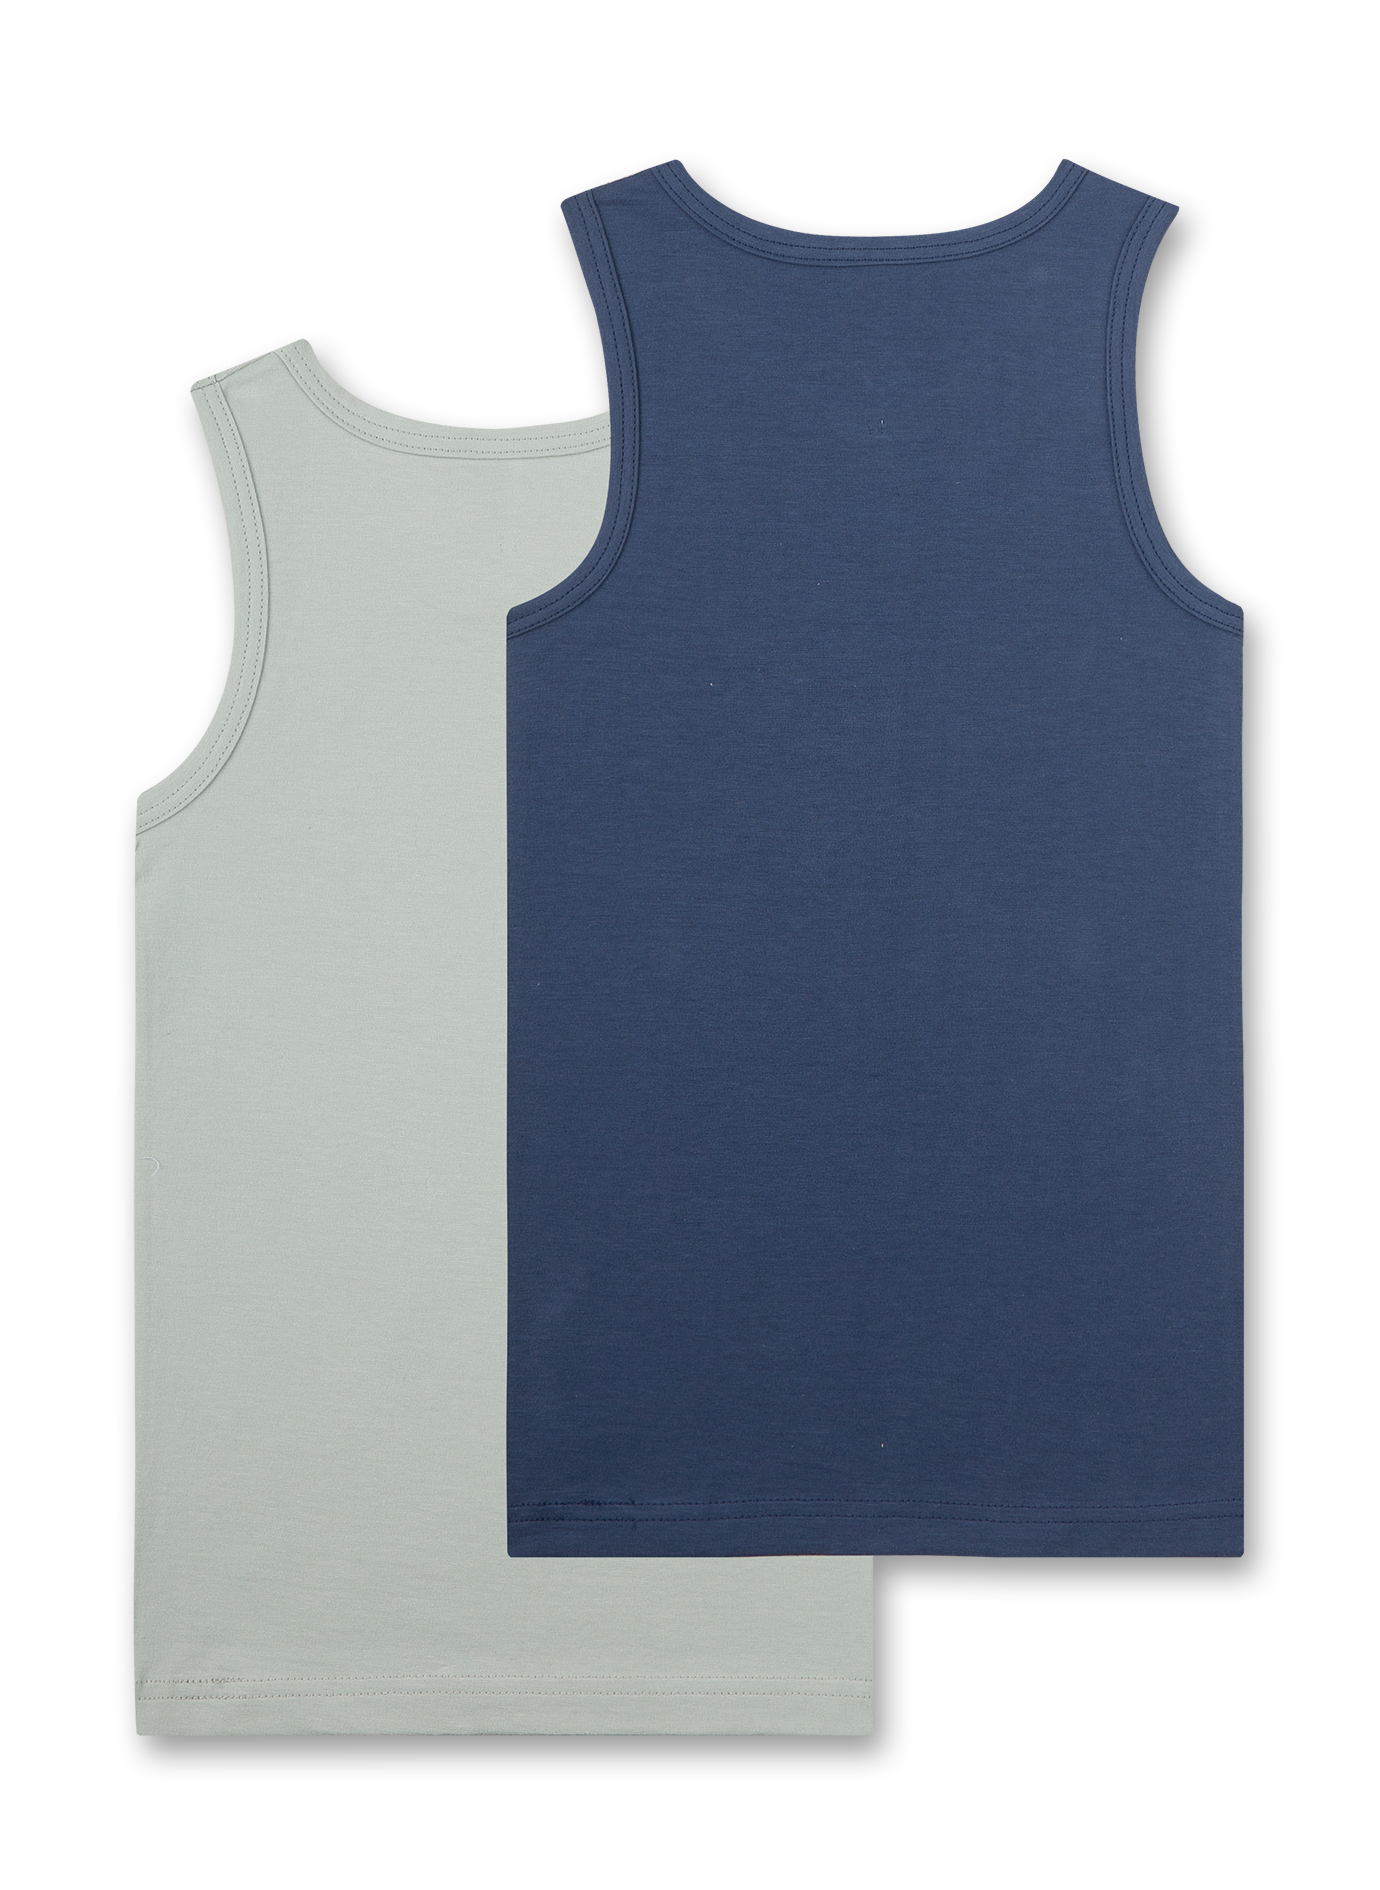 Jungen-Unterhemd (Doppelpack) Grau und Blau